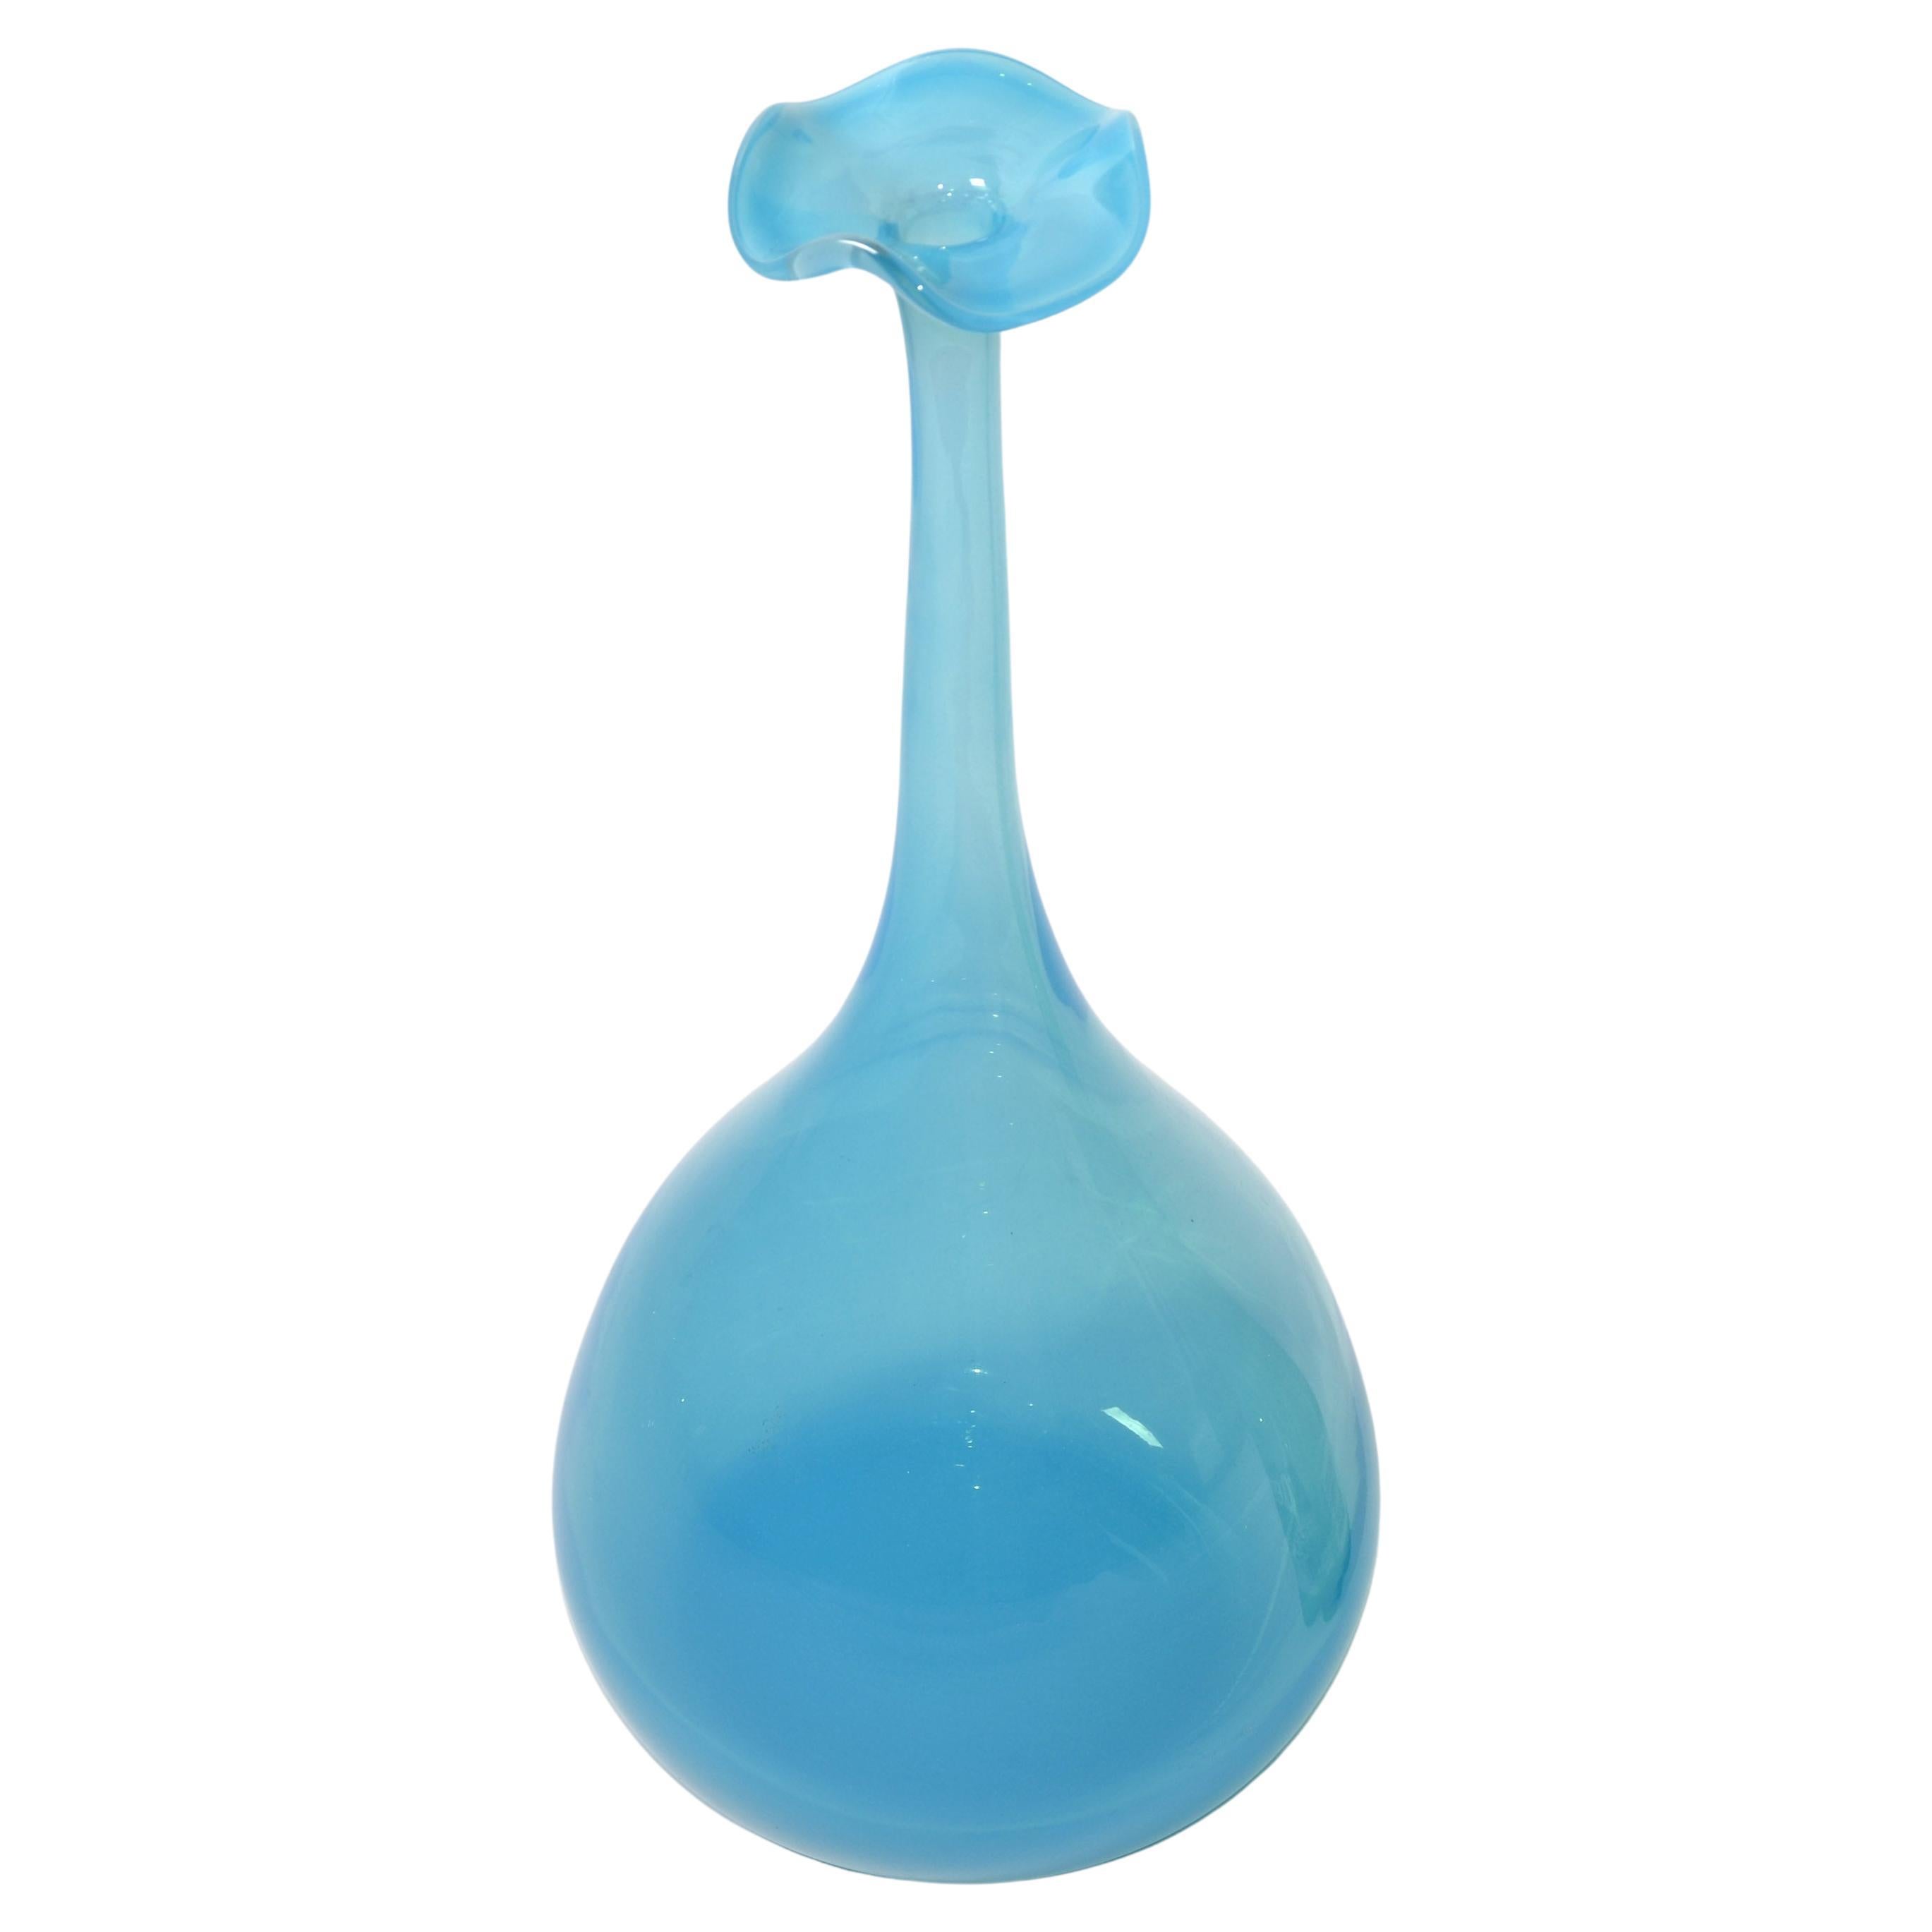 Kjell Engman Kosta Boda Style Blue Crystal Bud Art Vase Scandinavian Modern 1990 For Sale